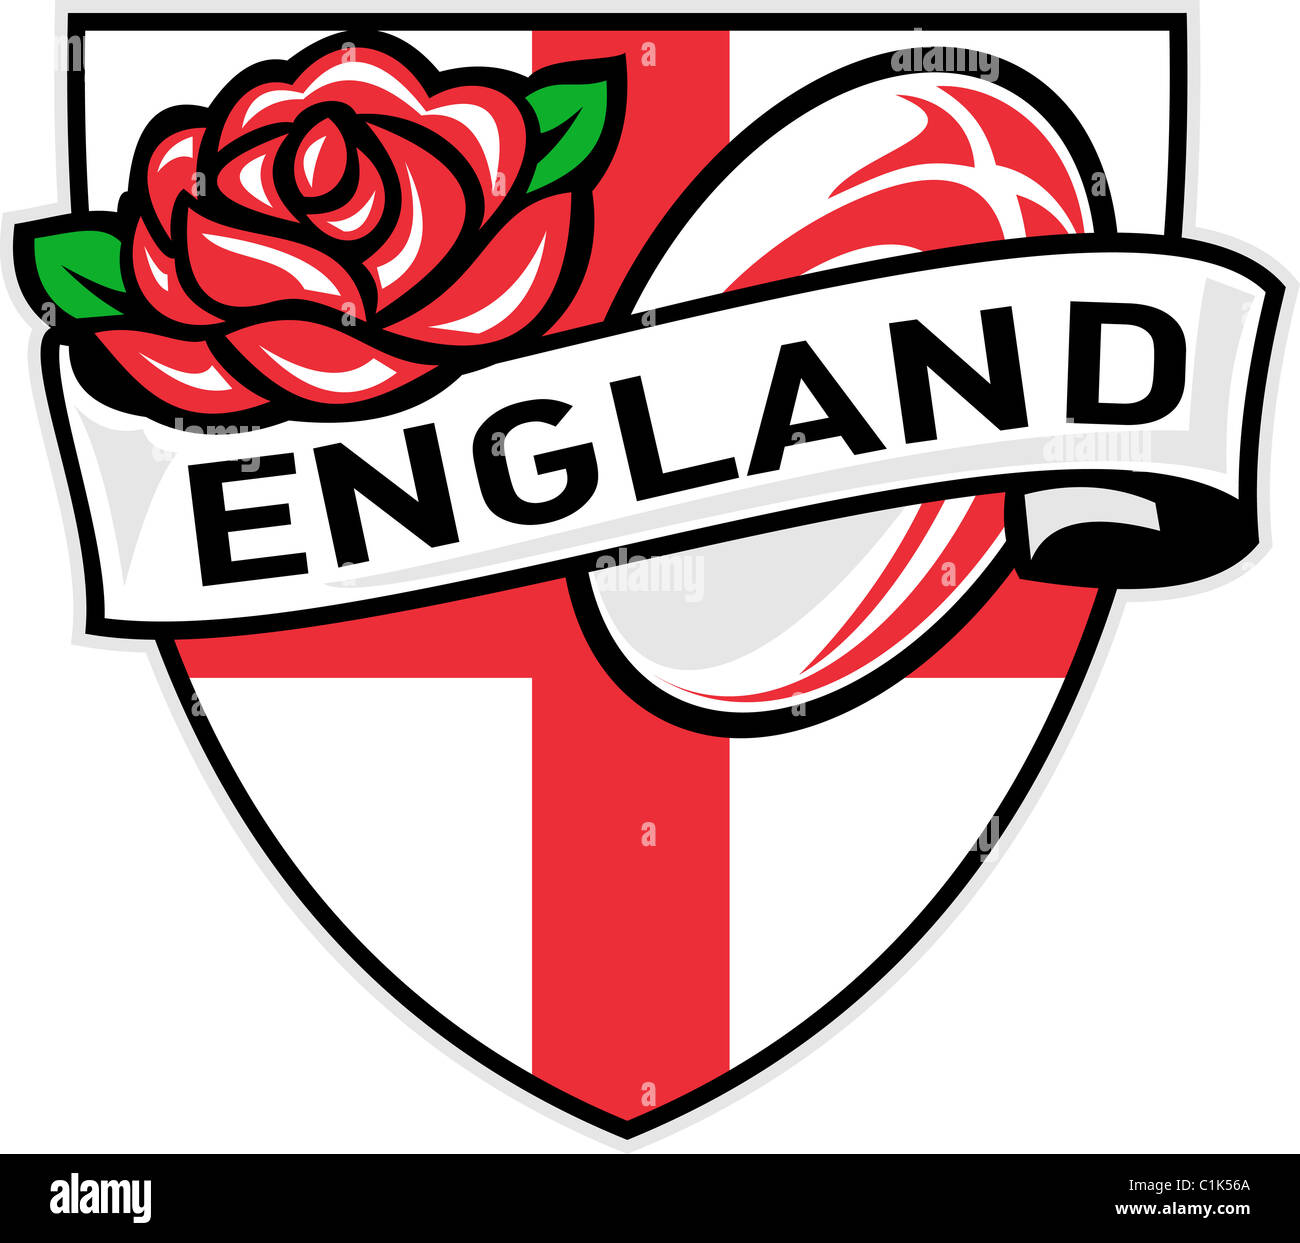 Abbildung einer roten englischen Rose innen Flagge Schild mit Rugby-Ball fliegen aus und Worte "England" Stockfoto